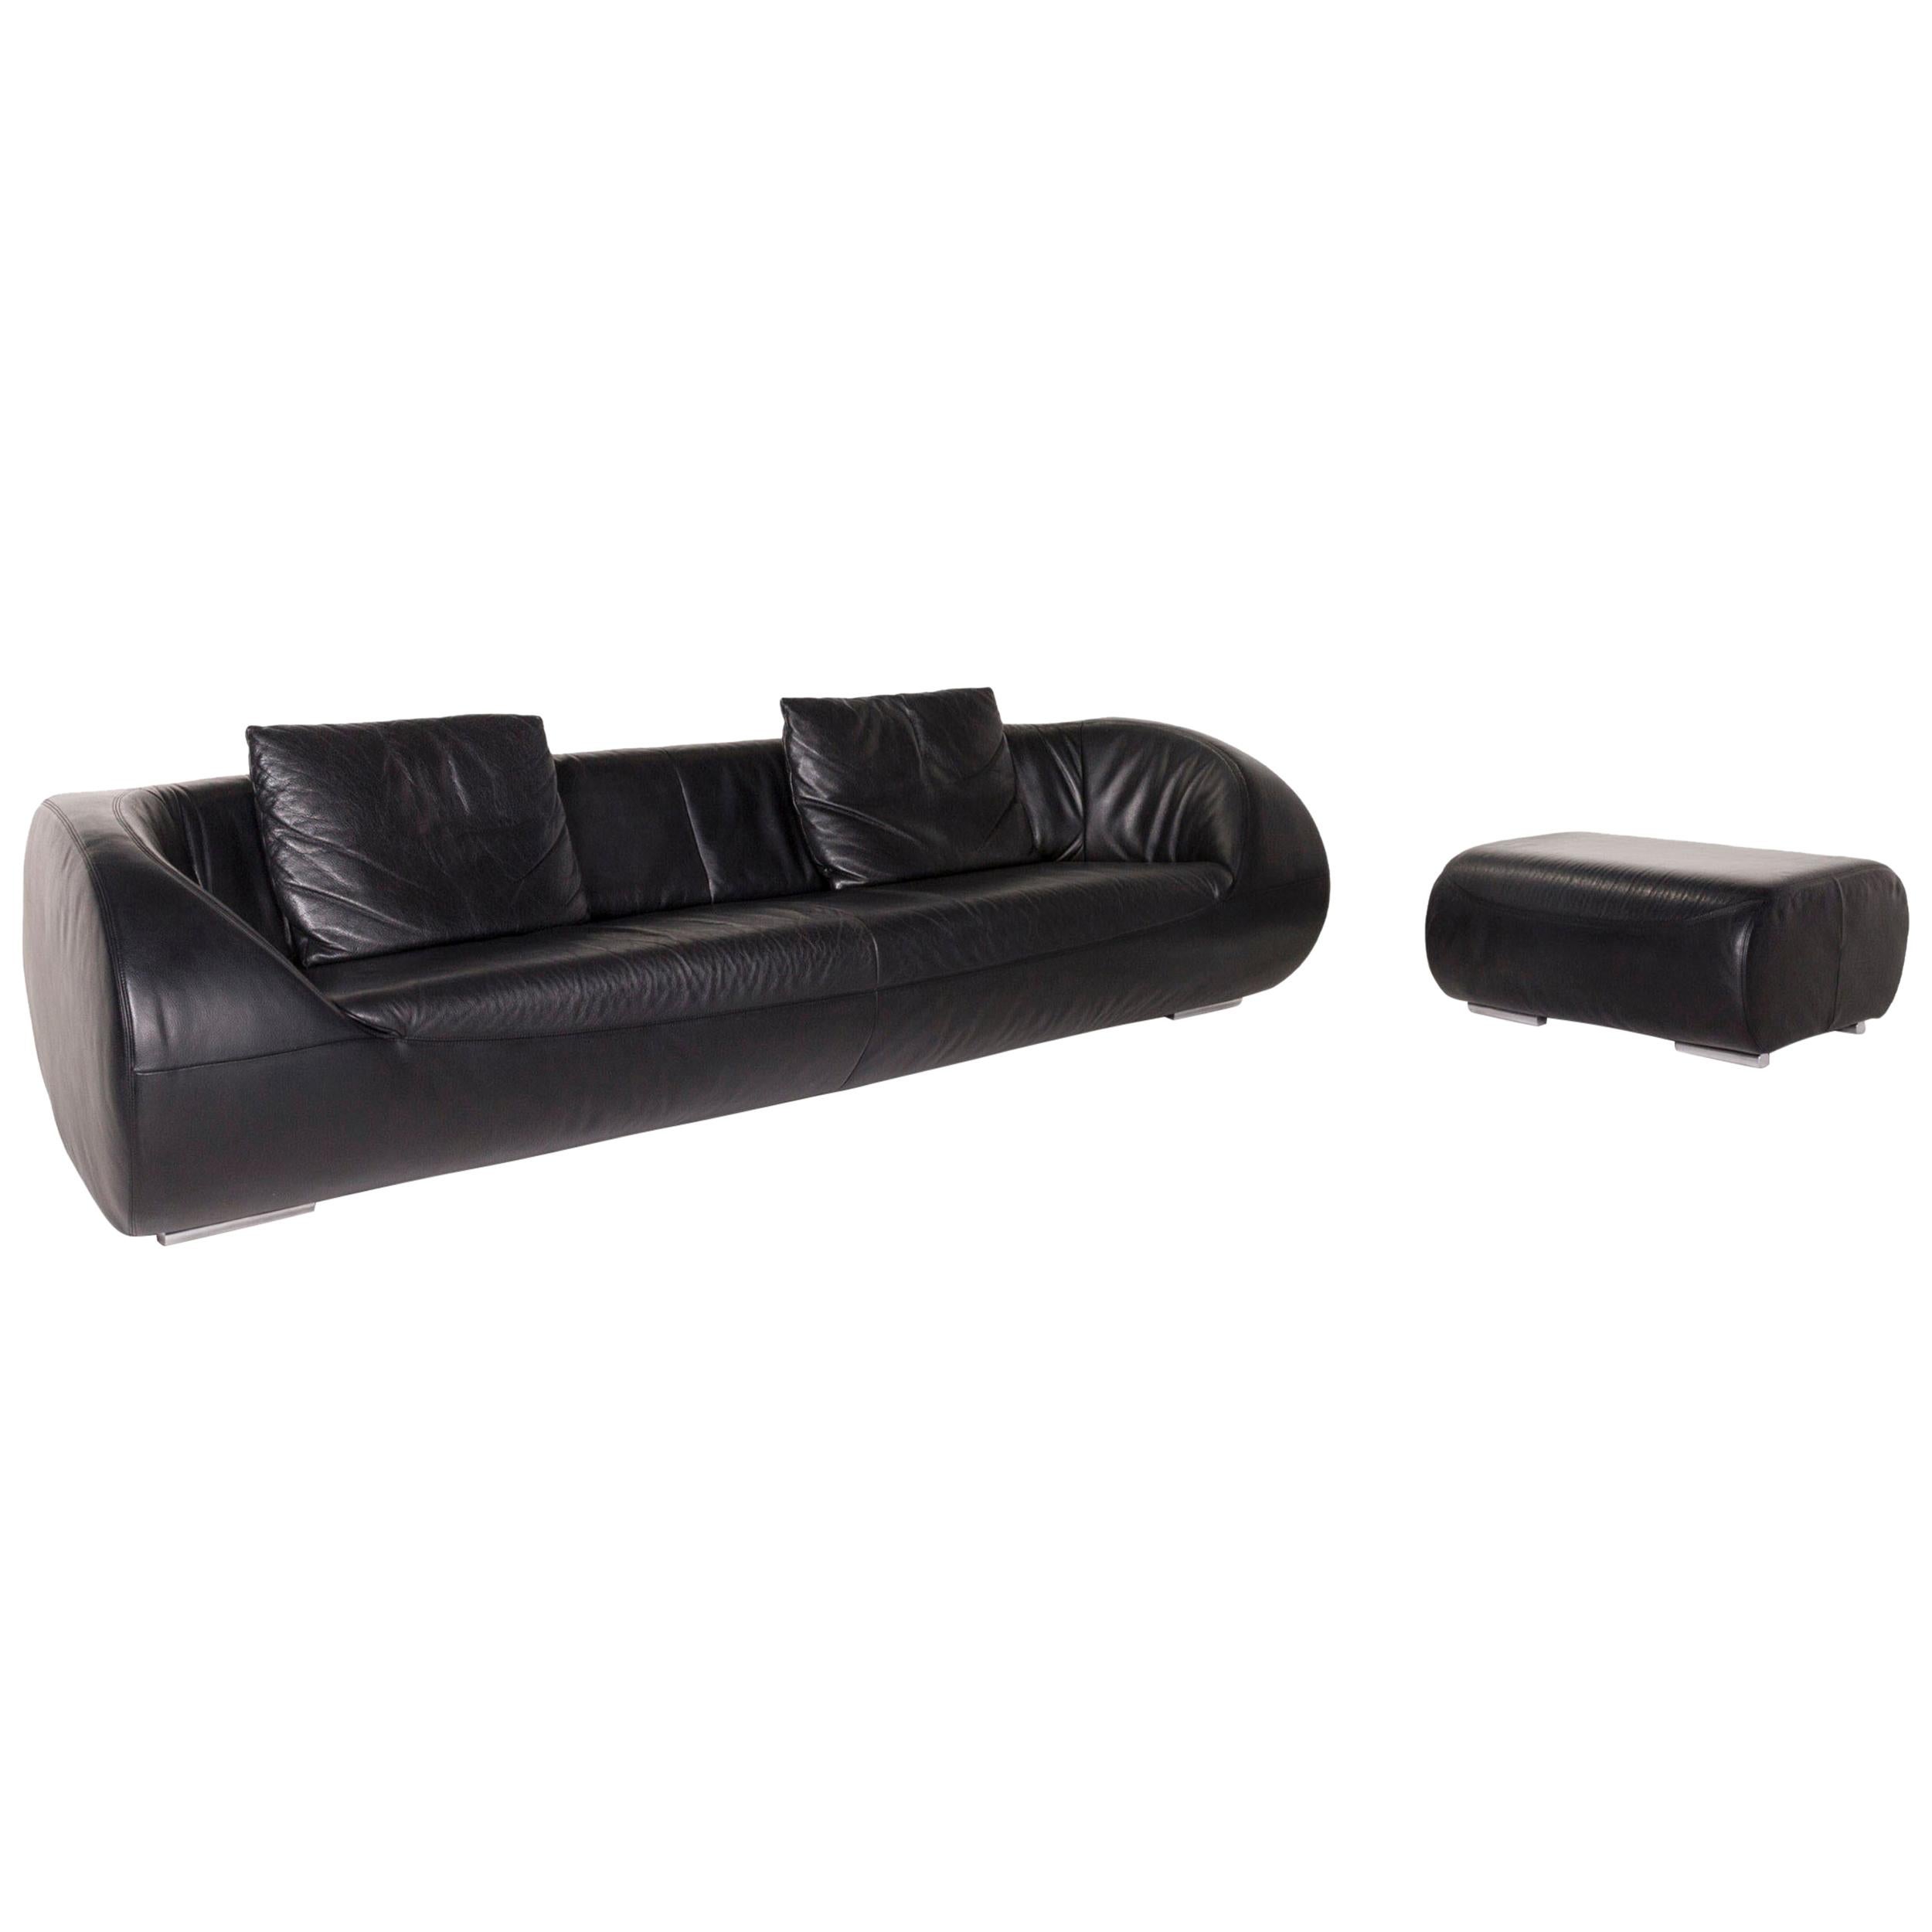 Koinor Pearl Leather Sofa Set Black 1 Three-Seat 1 Stool